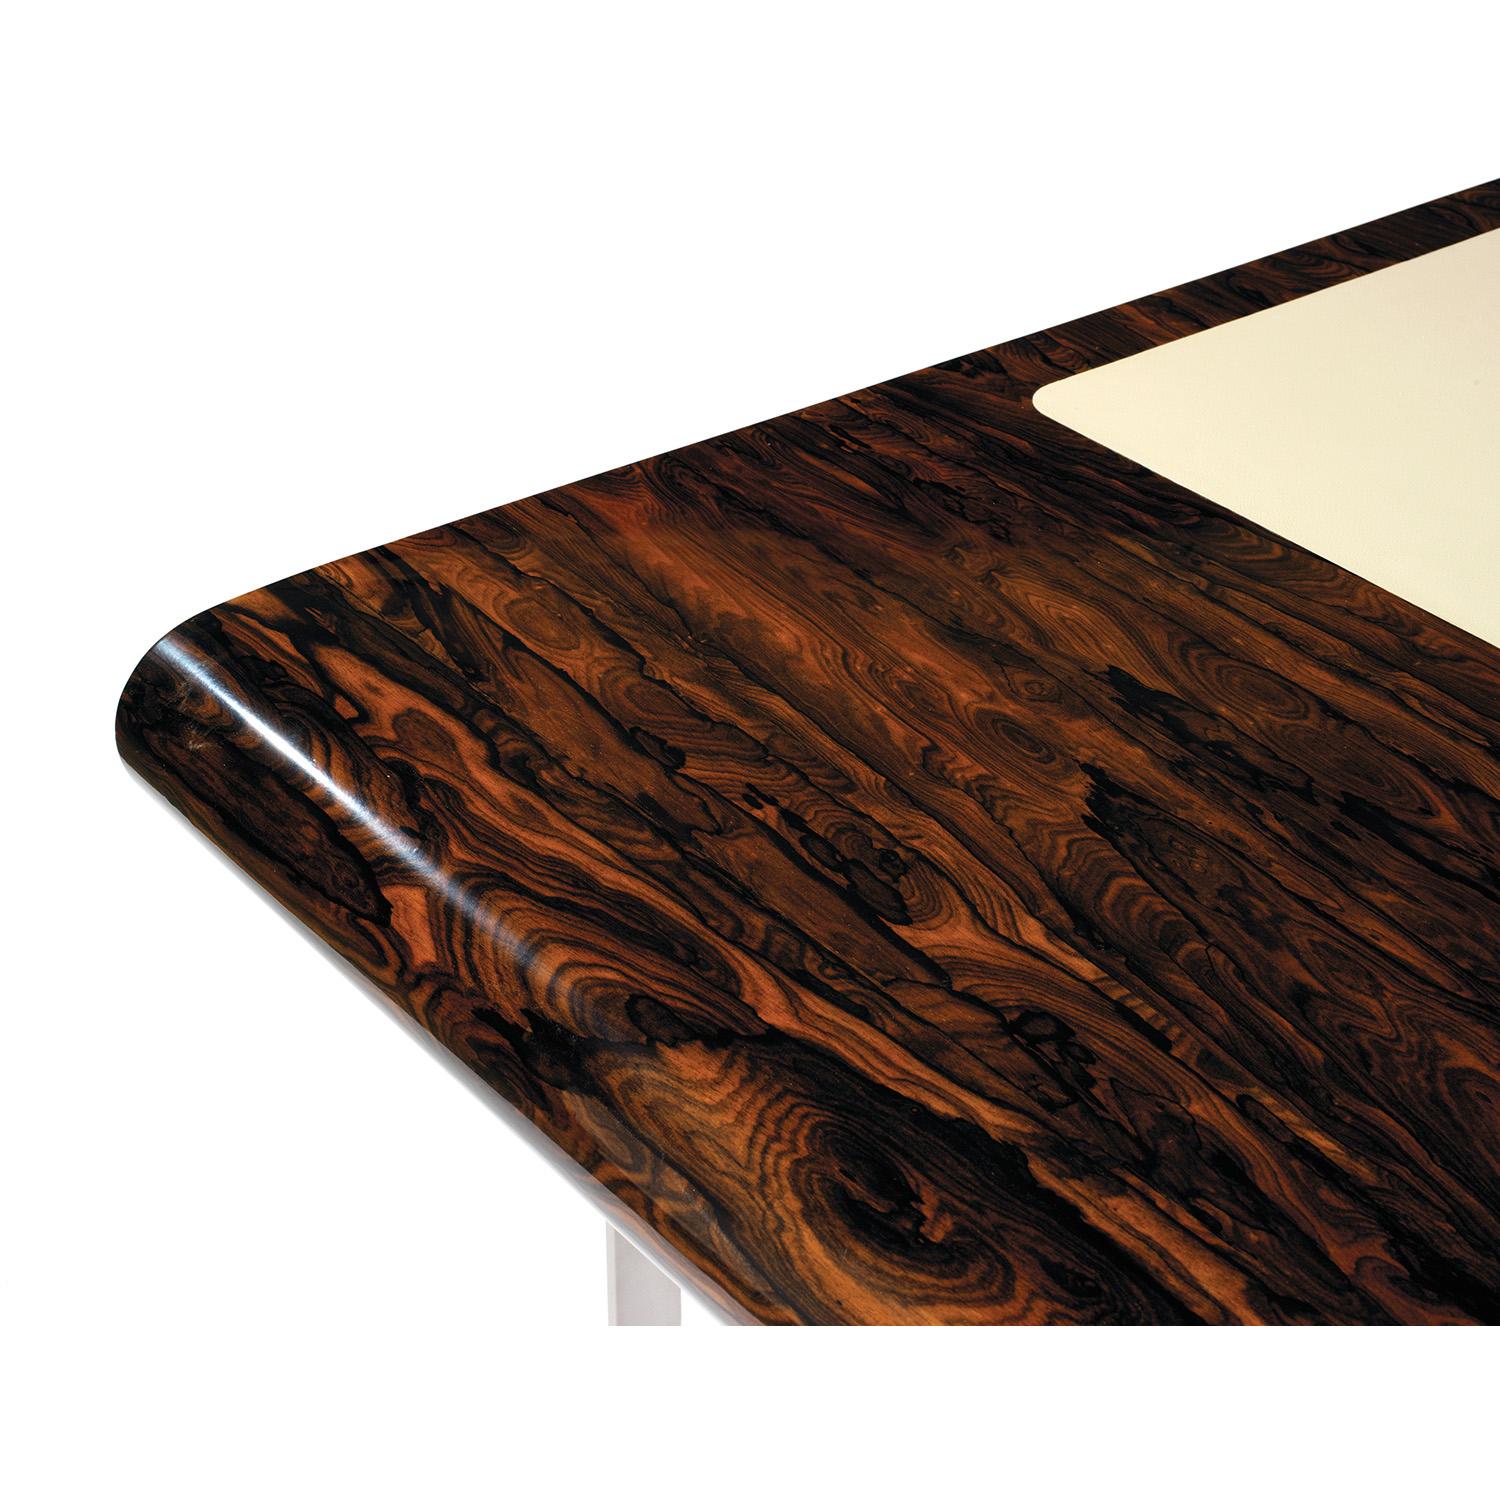 Kleiner Shanghai-Schreibtisch aus Ziricotte-Holz und silberfarben patinierten Beinen. Es gibt zwei Schubladen auf jeder Seite.
Die Seiten sind mit Intarsien aus Zirkon und schwarzem Bergahorn versehen. Dieser Tisch kann auch in anderen Abmessungen